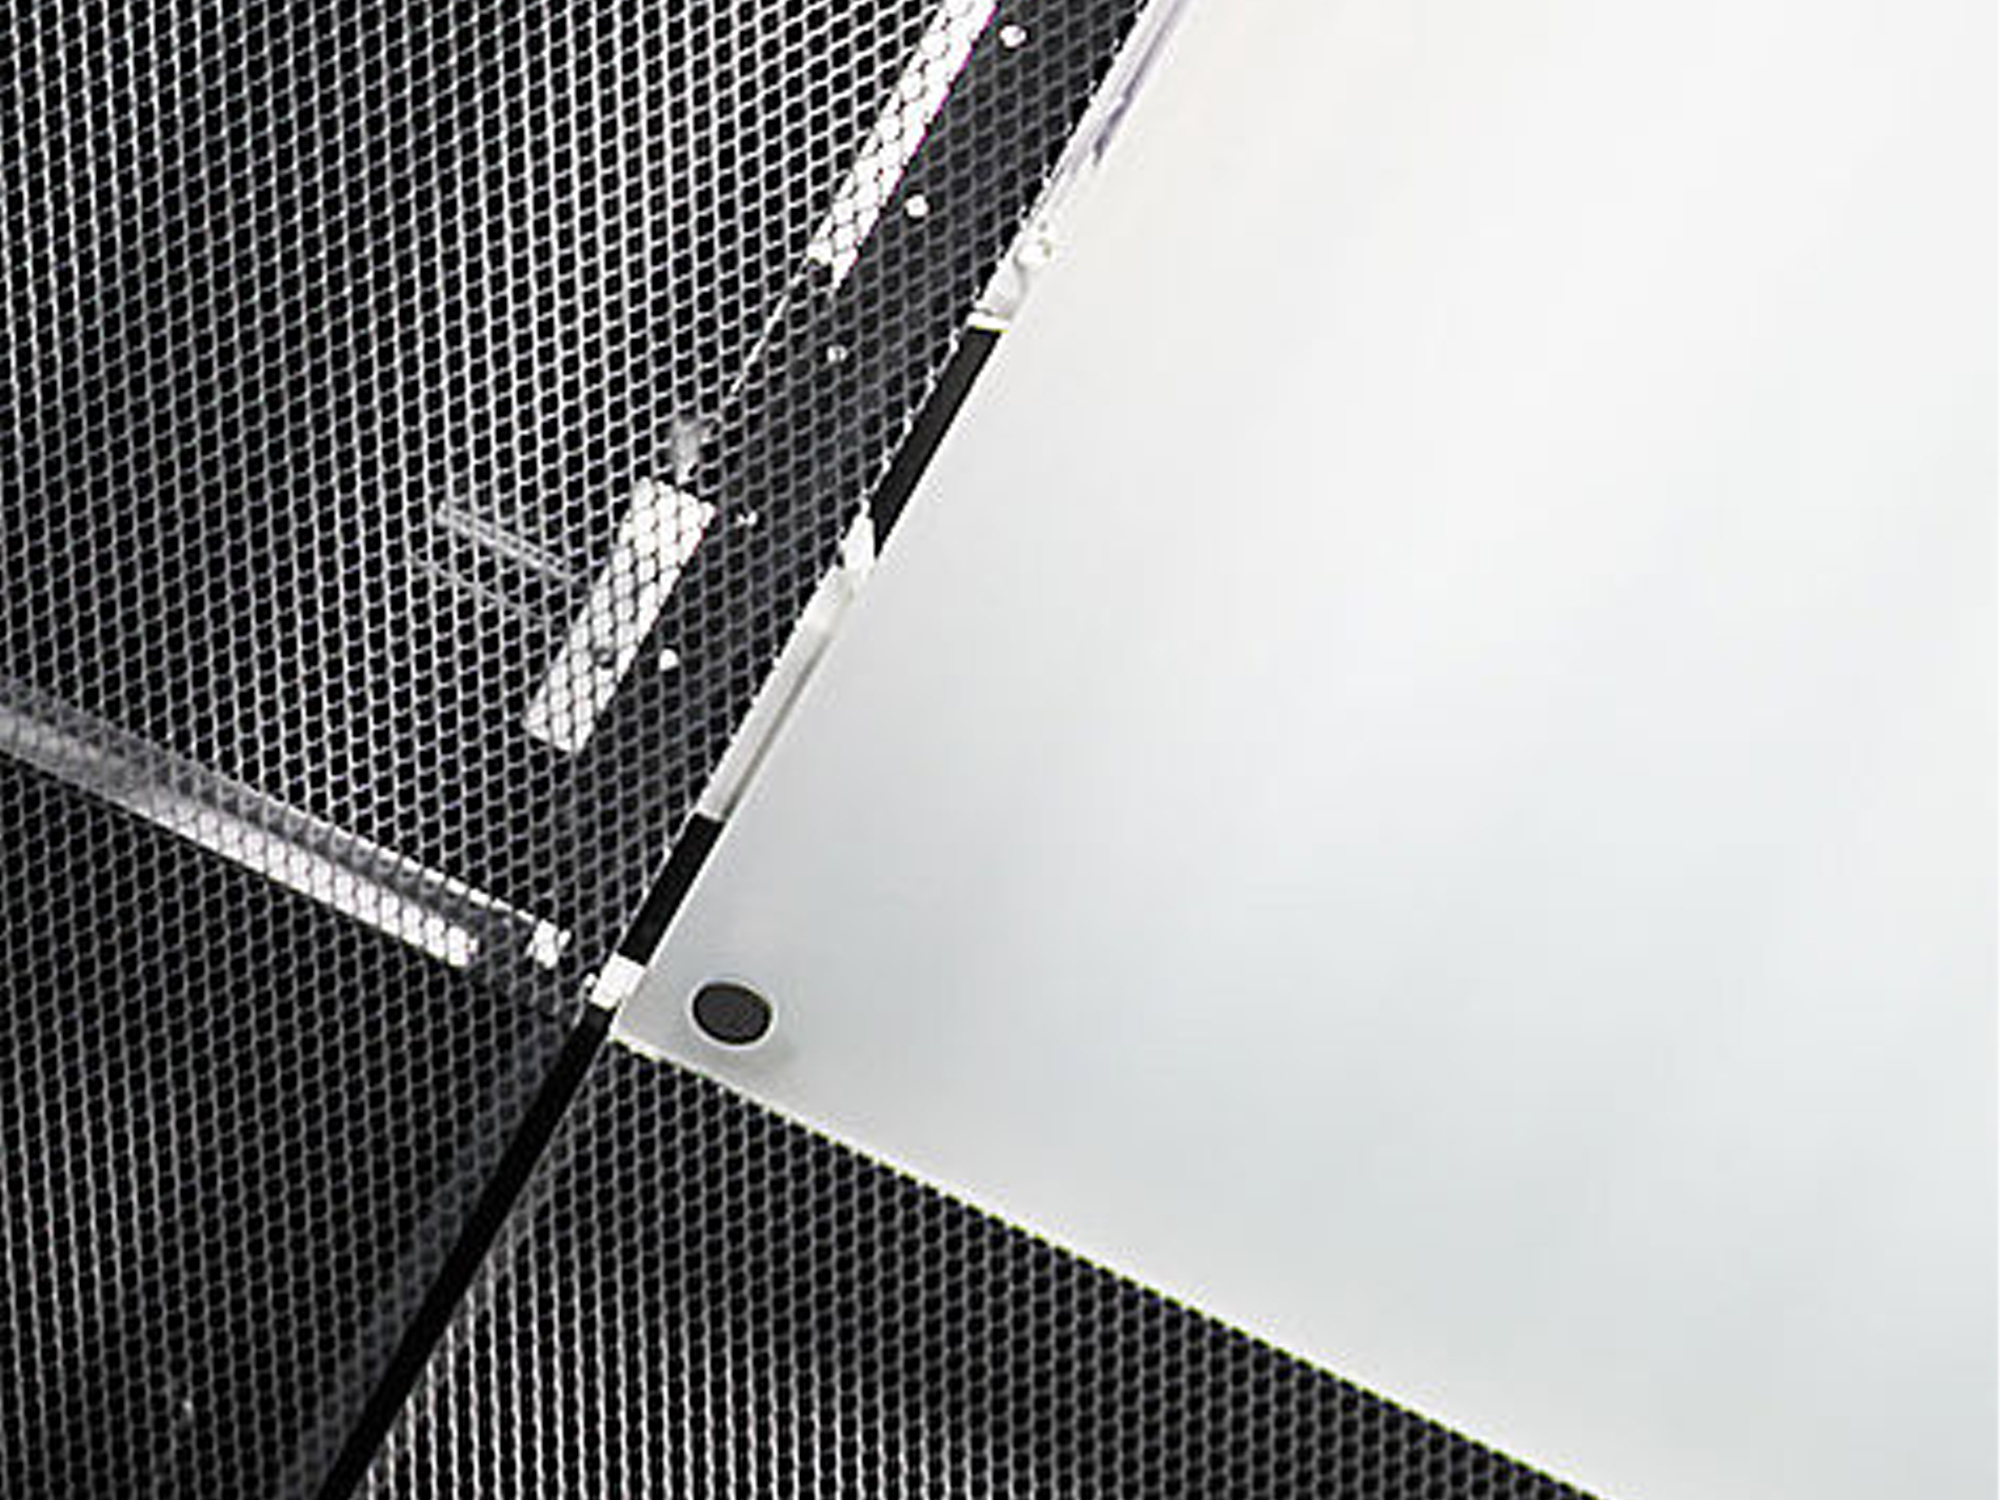 FLOREASCA PARK Perforated Aluminum Panel Ceiling Panel Customized Ceiling Aluminum Metal Ceiling